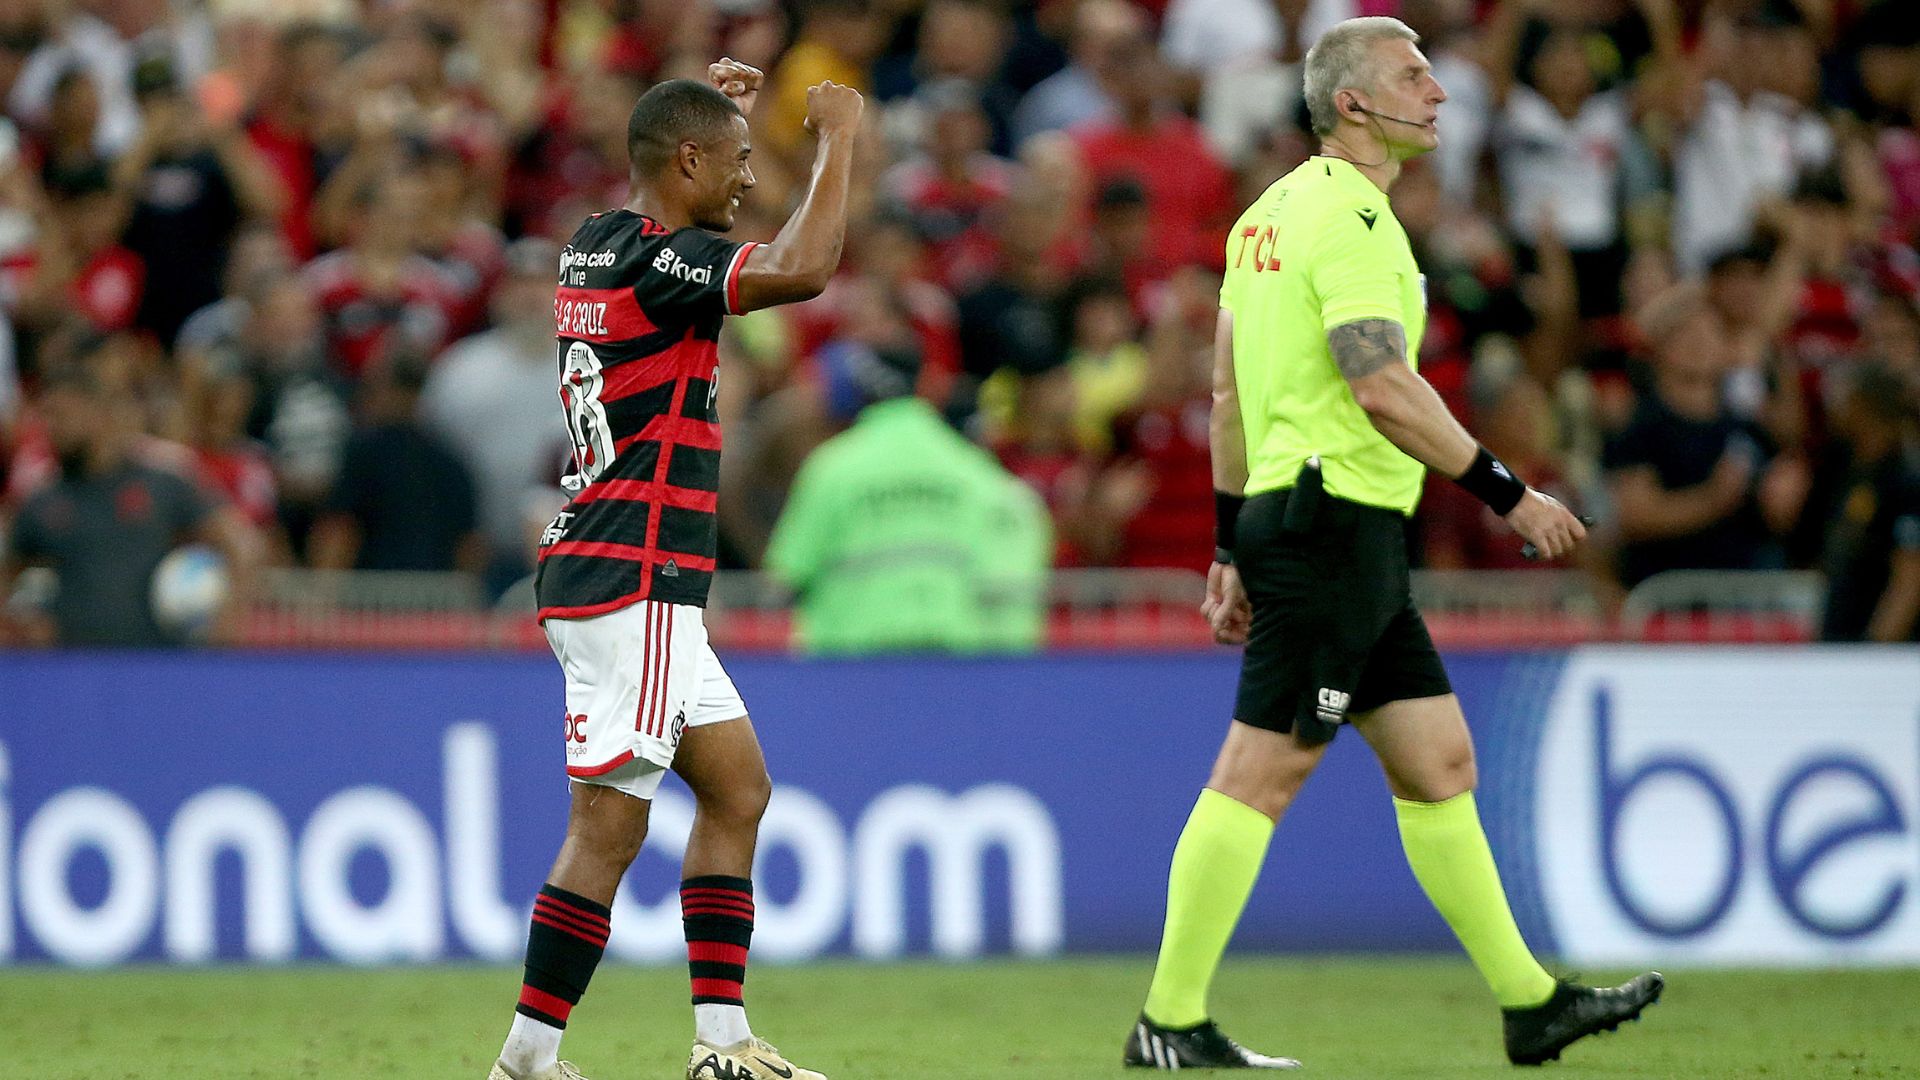 Nico De La Cruz comemorando o gol marcado contra o São Paulo (Crédito: Getty Images)